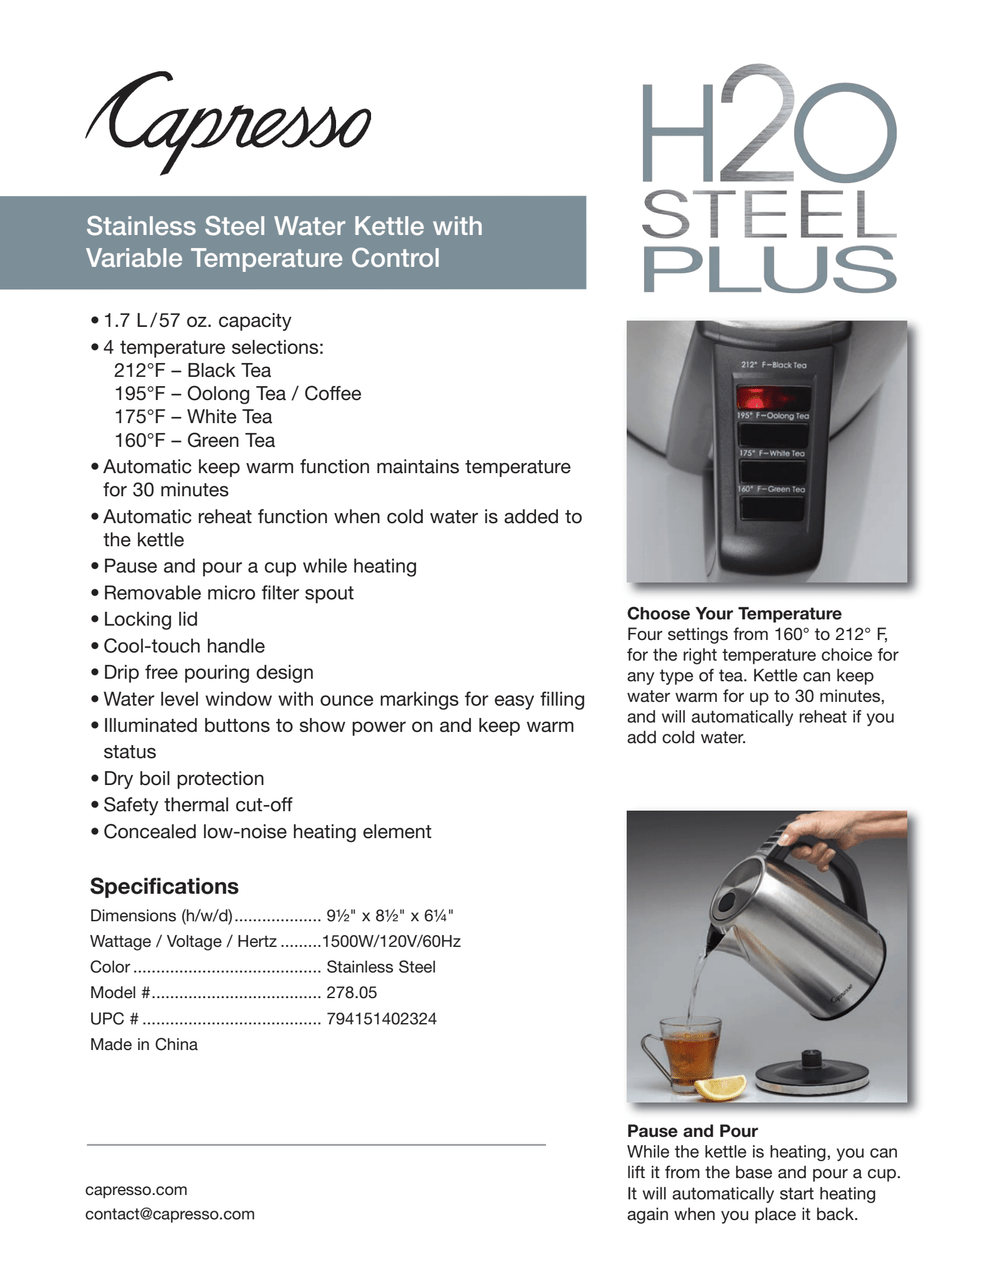 Capresso H20 Steel Plus Electric Water Kettle